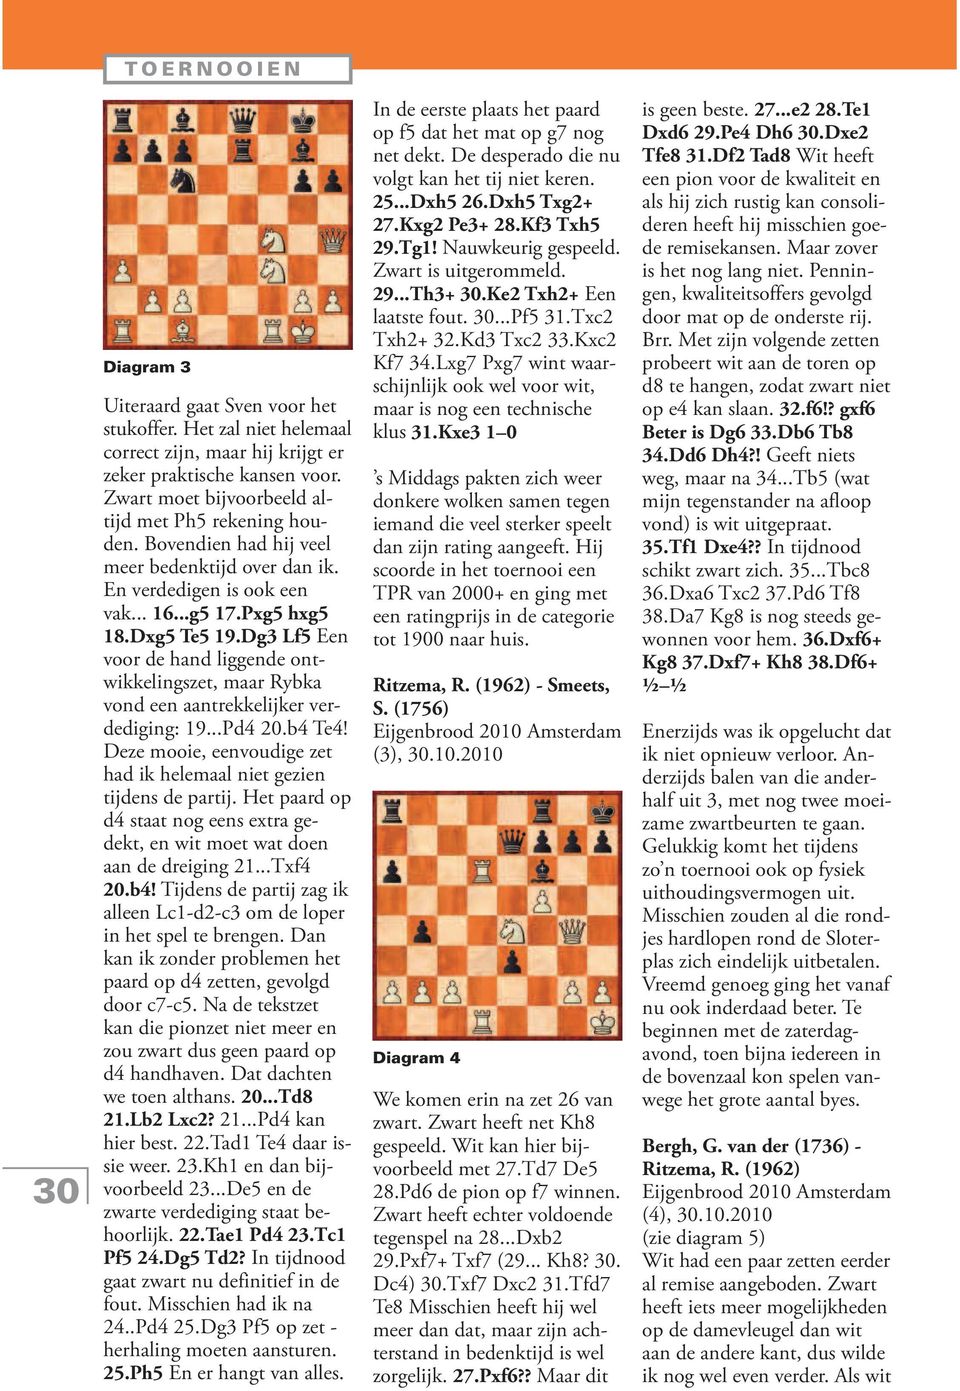 Dg3 Lf5 Een voor de hand liggende ontwikkelingszet, maar Rybka vond een aantrekkelijker verdediging: 19...Pd4 20.b4 Te4! Deze mooie, eenvoudige zet had ik helemaal niet gezien tijdens de partij.